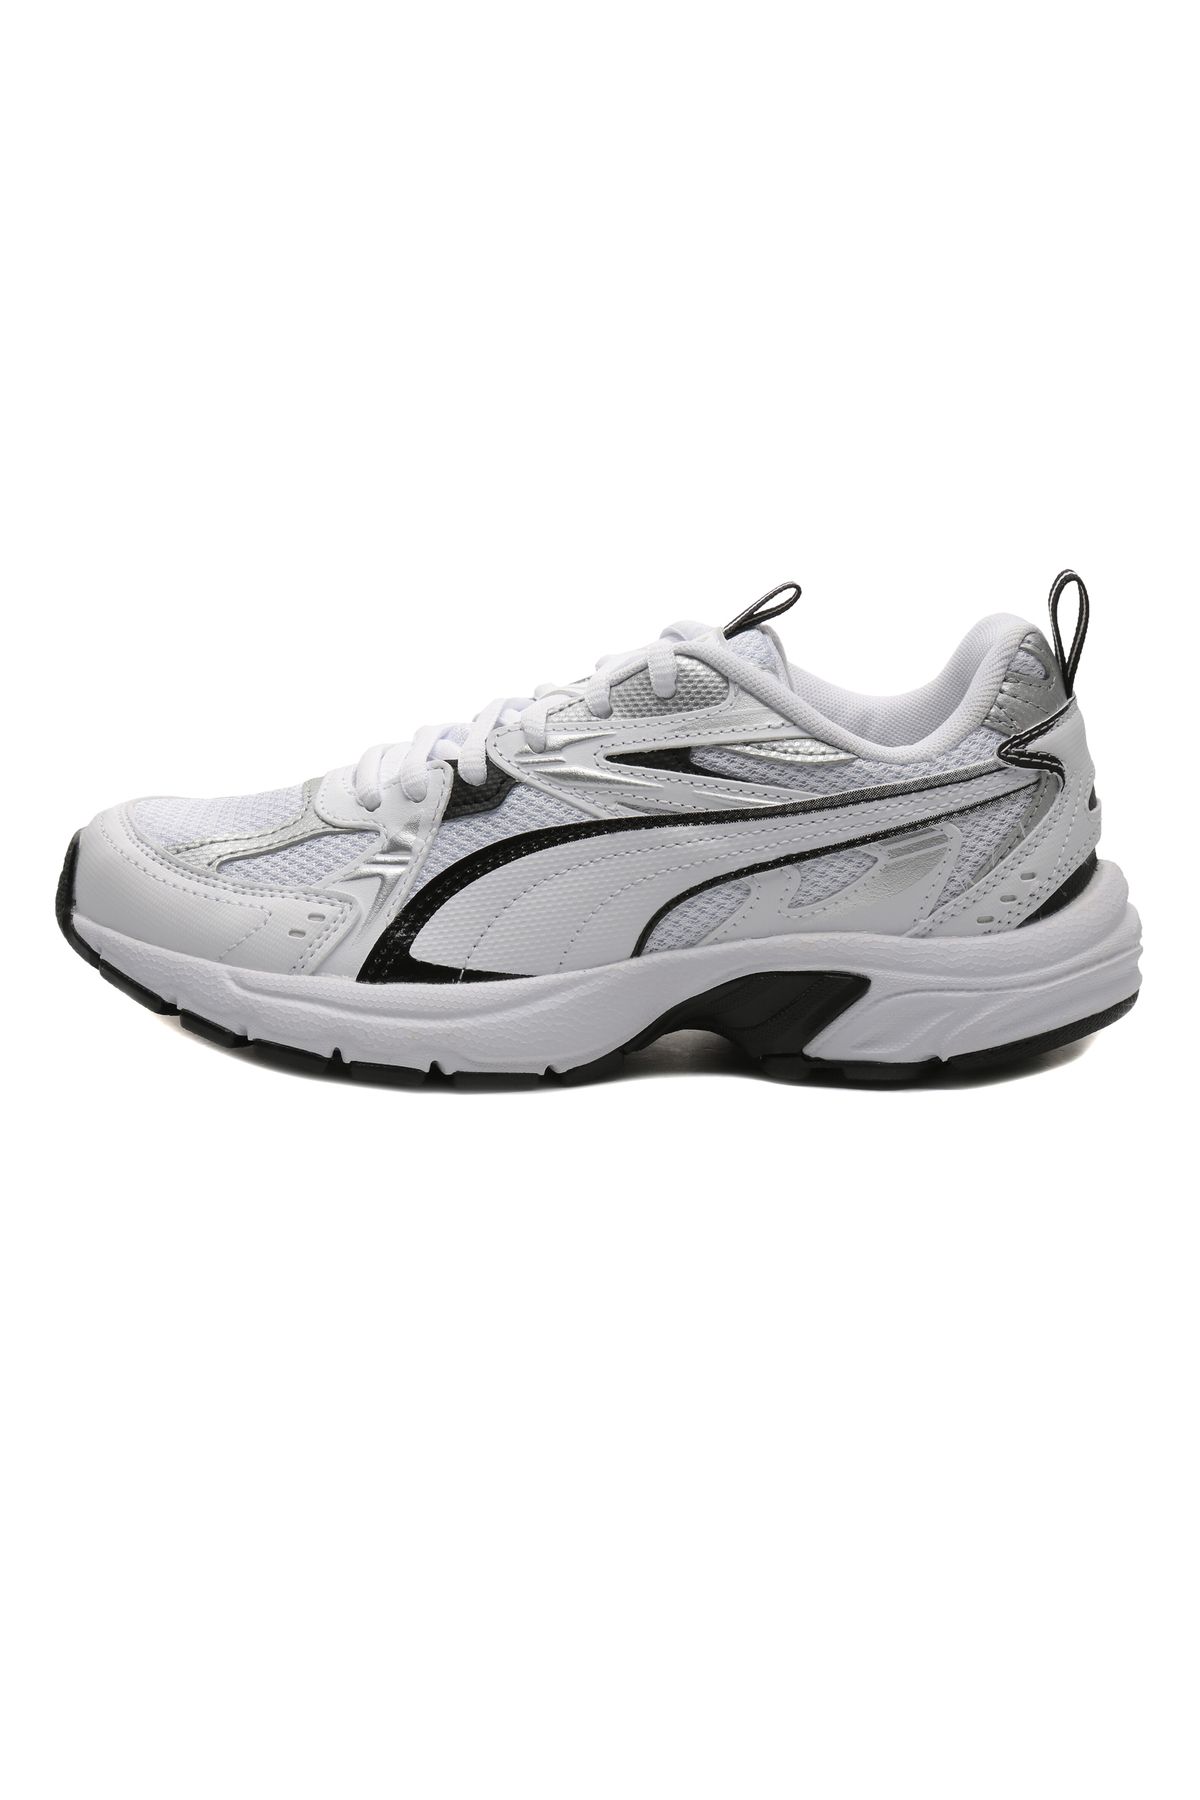 Puma 392322-01 Milenio Tech Spor Ayakkabı Beyaz